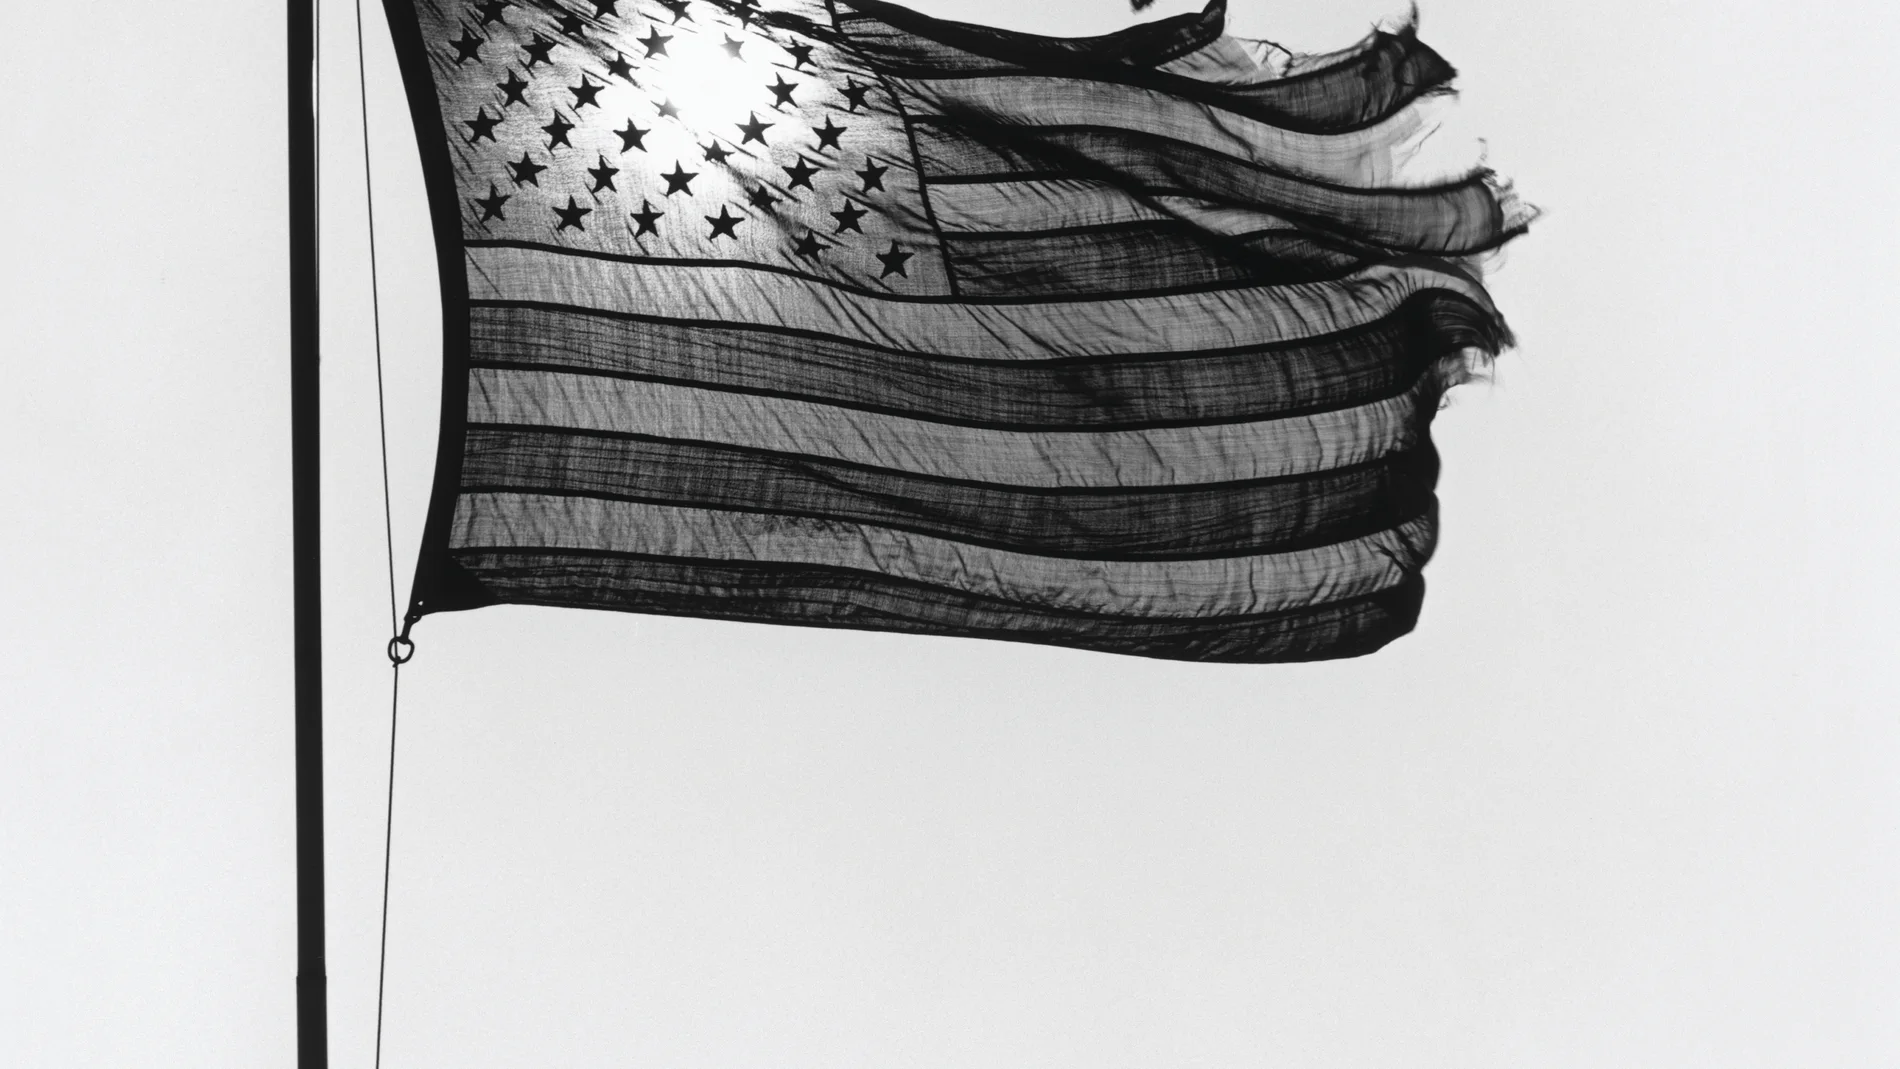 Bandera norteamericana al trasluz, de Robert Mapplethorpe